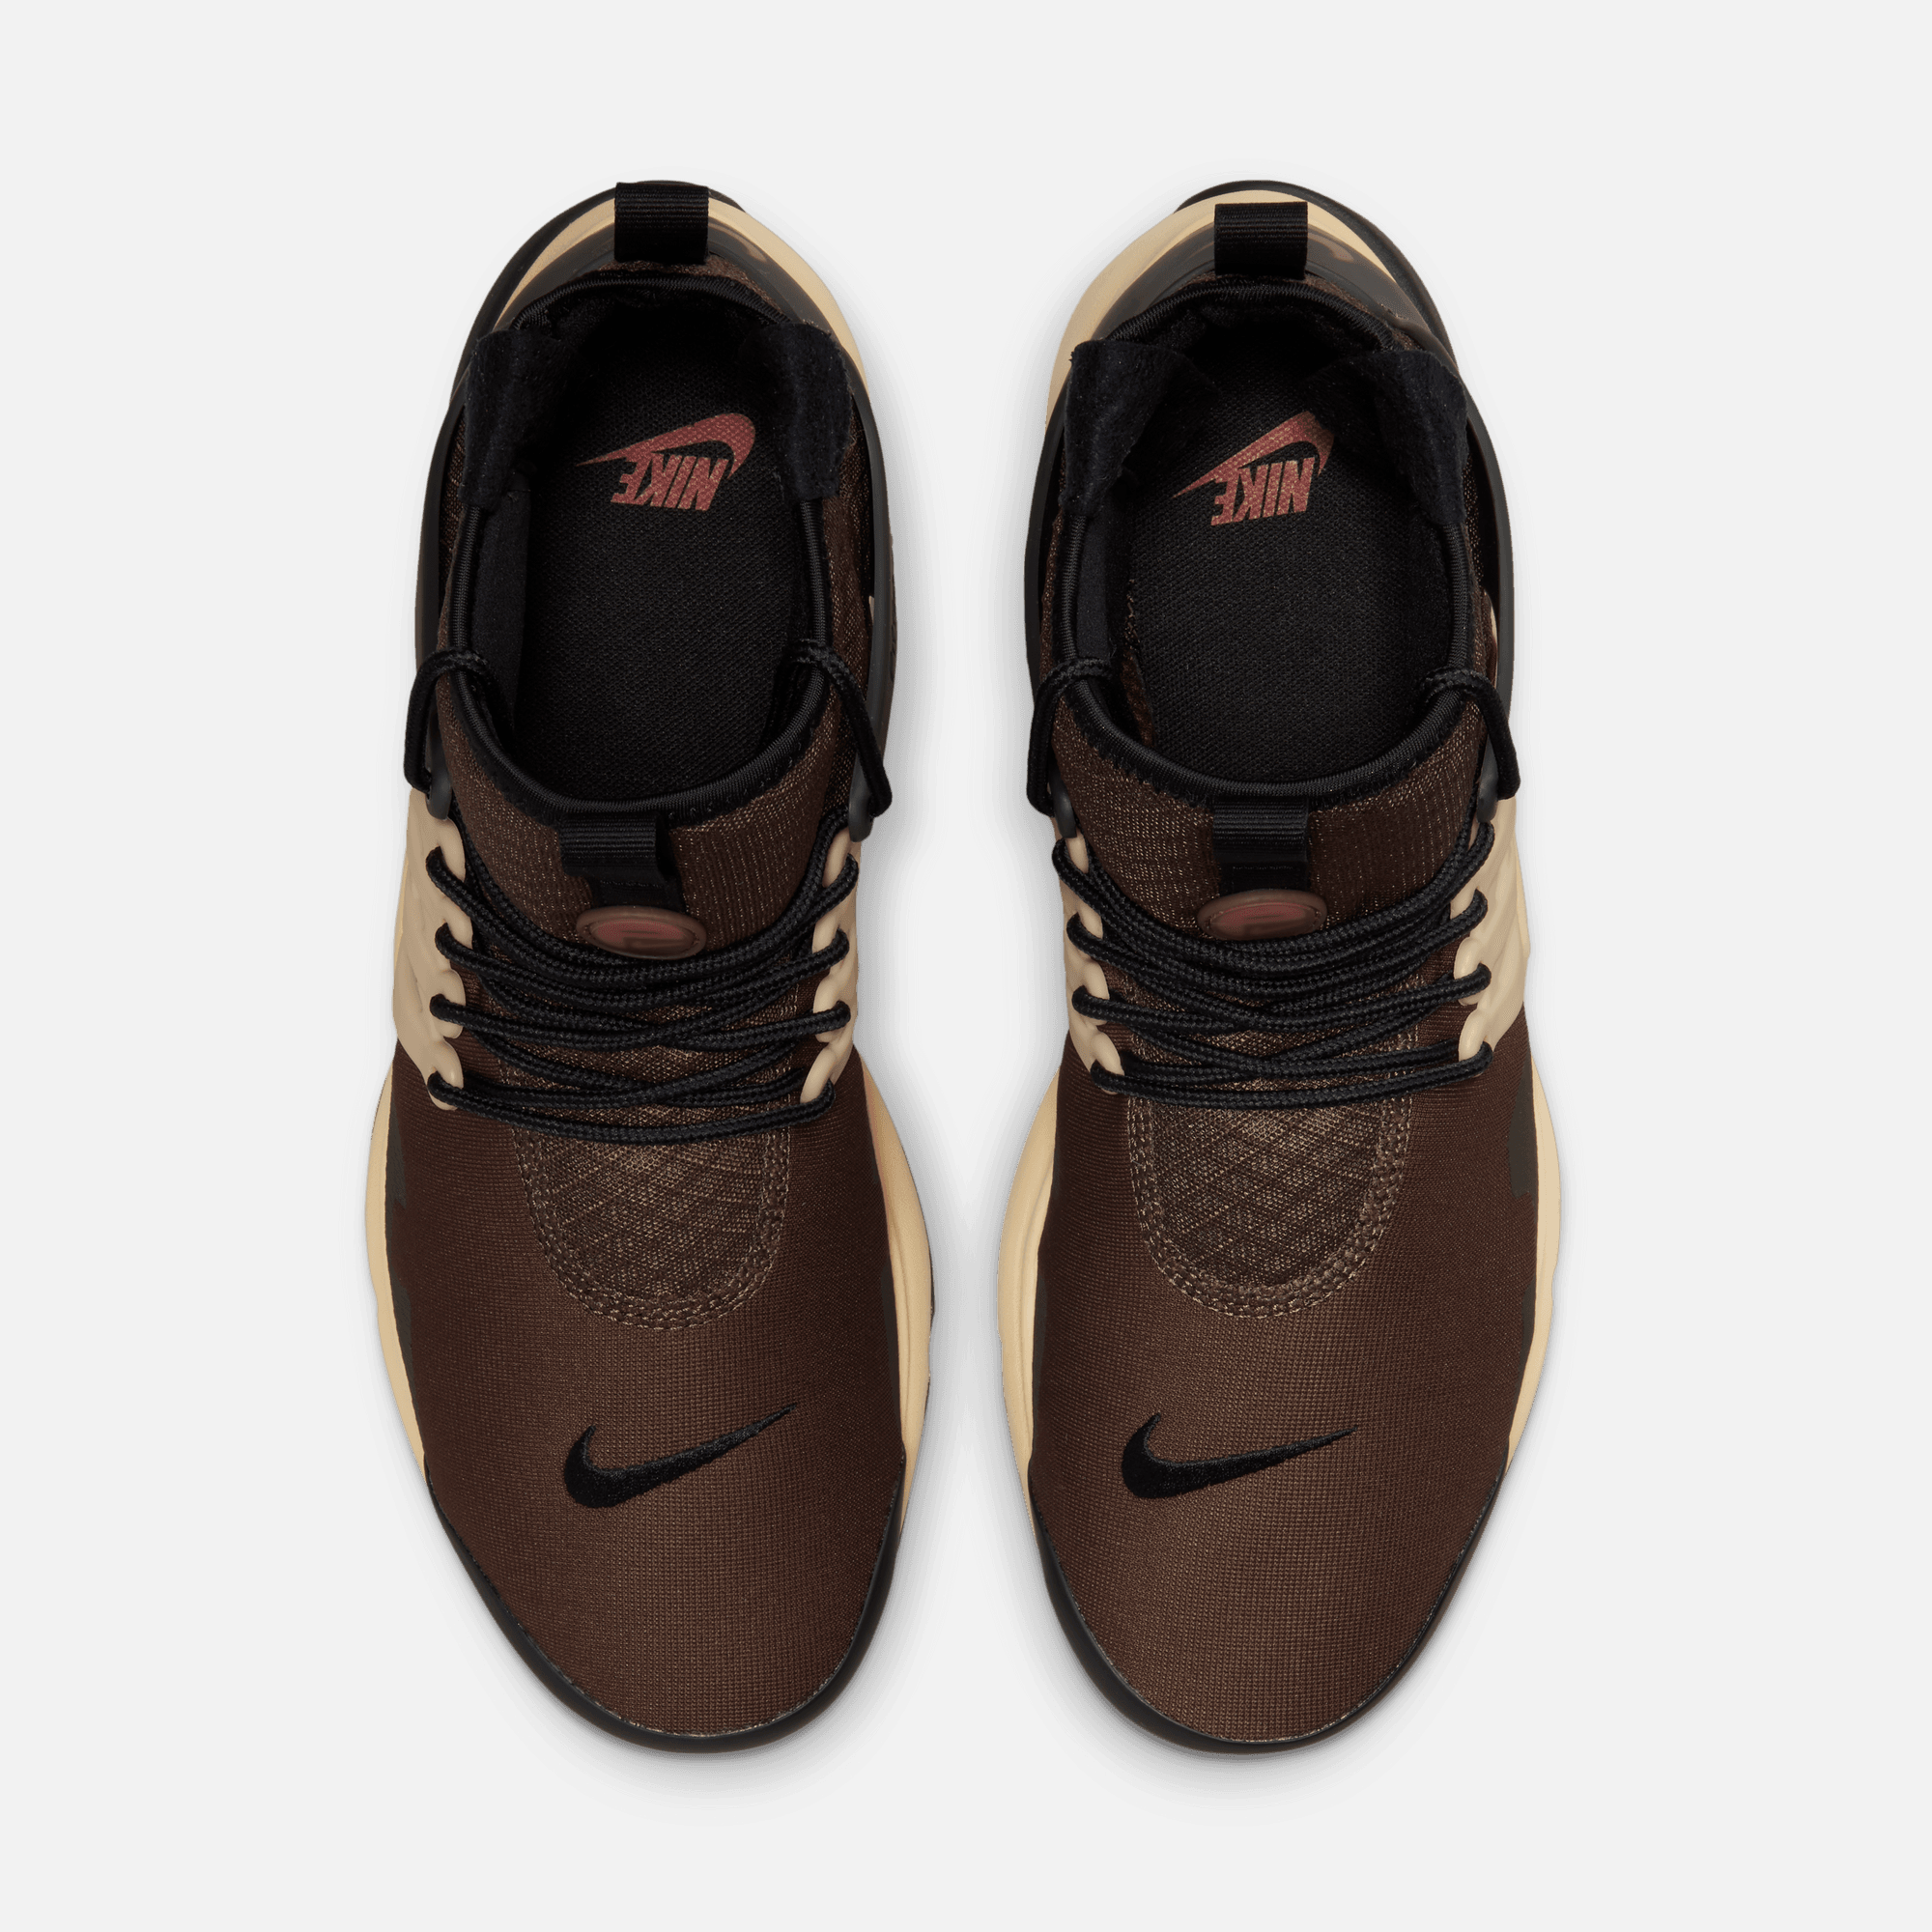 Nike Presto Mid Utility Brown